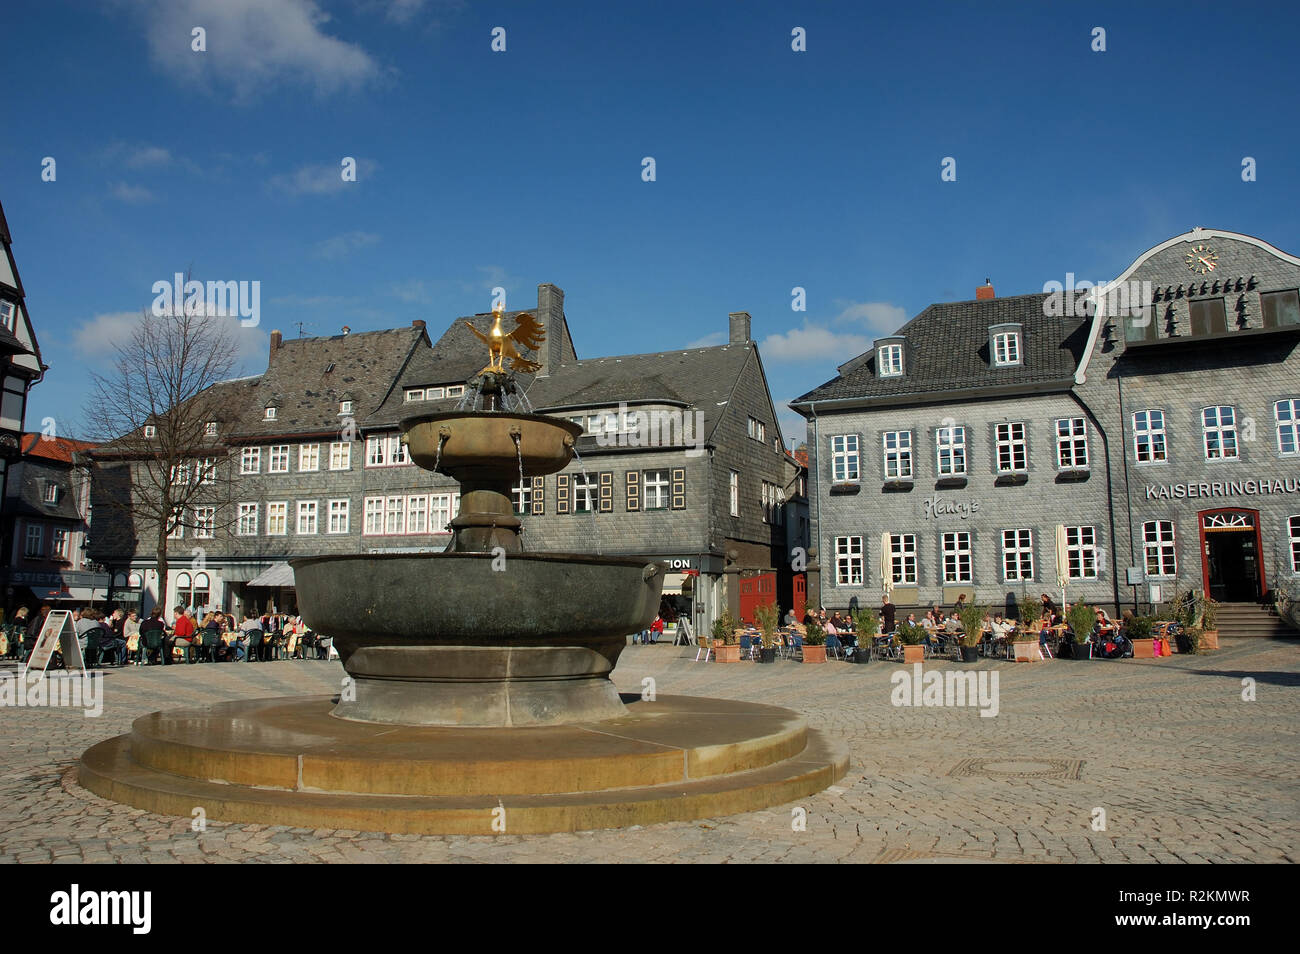 goldener adler on the marketplace in goslar Stock Photo